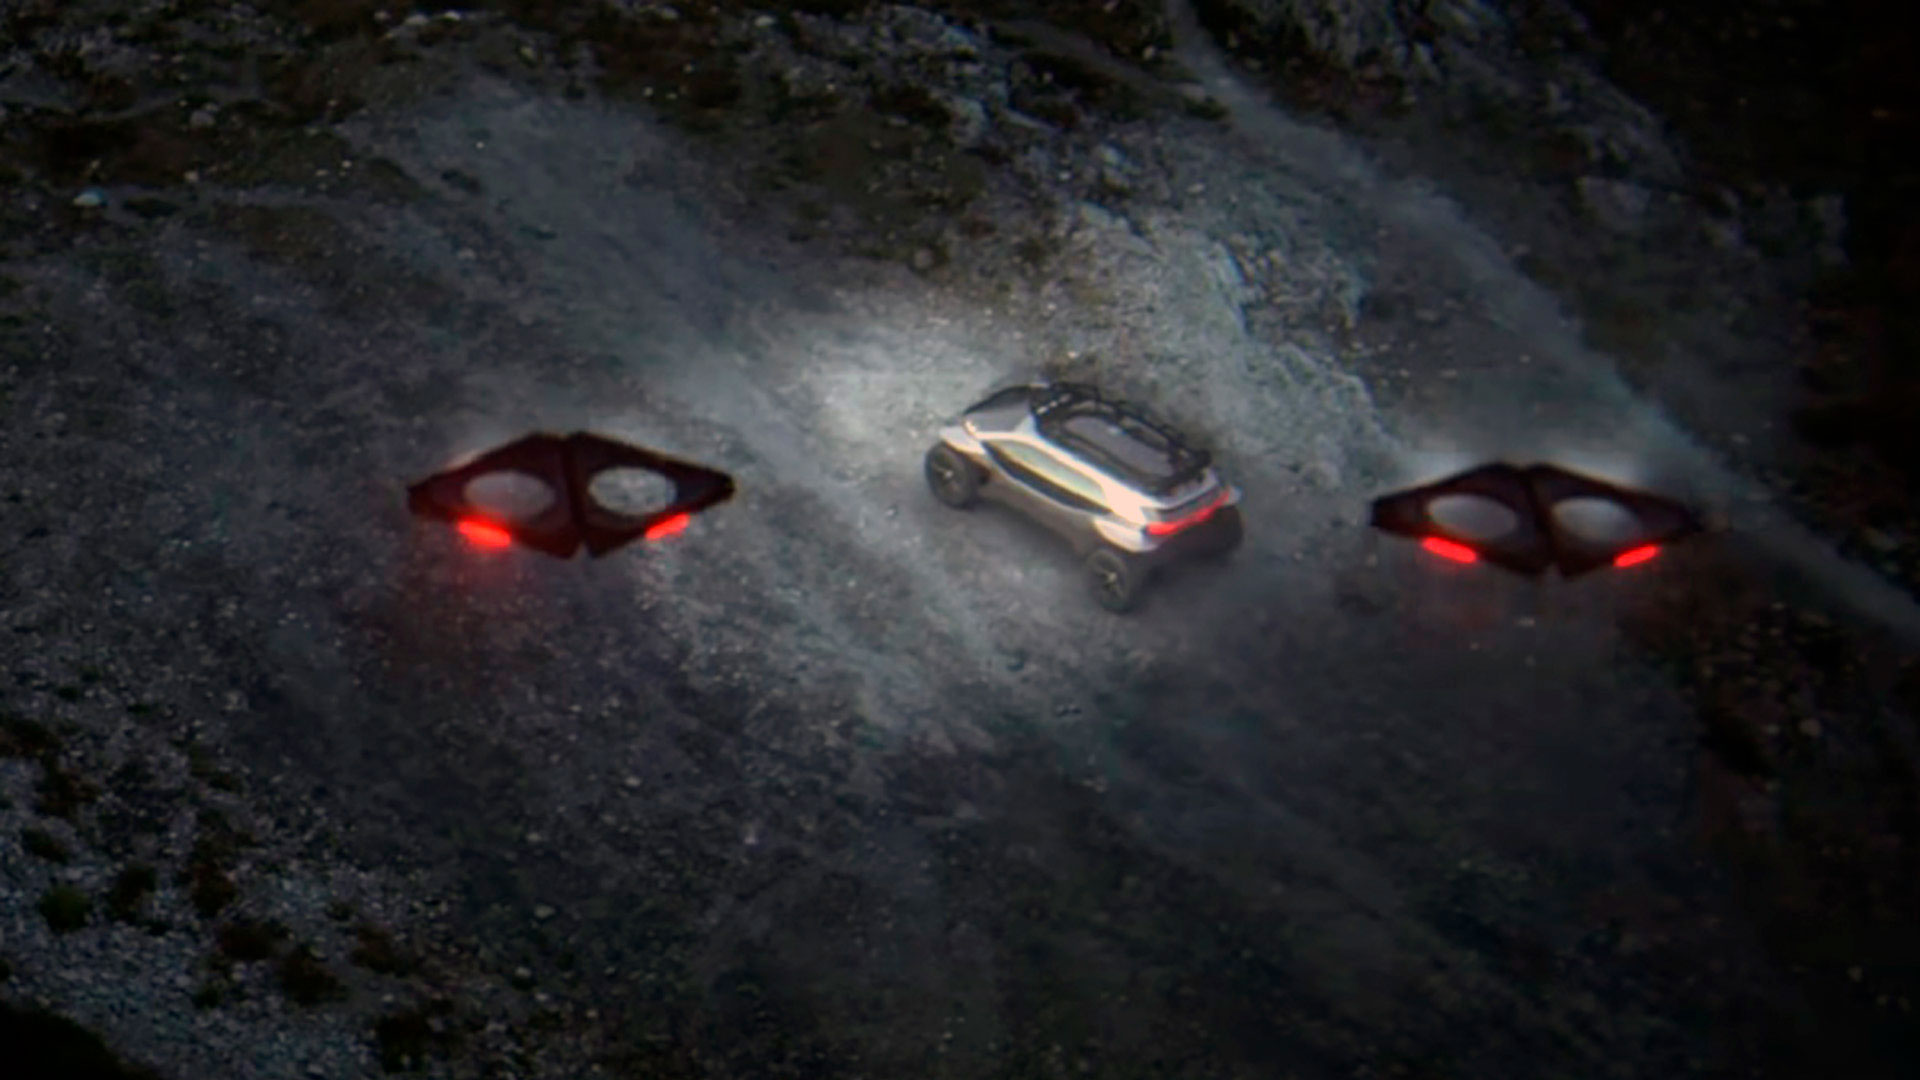 En 2019, Audi también presentó un vehículo concepto, que mostraba un uso diferente de los drones, en este caso para iluminar el terreno al que se quería acceder